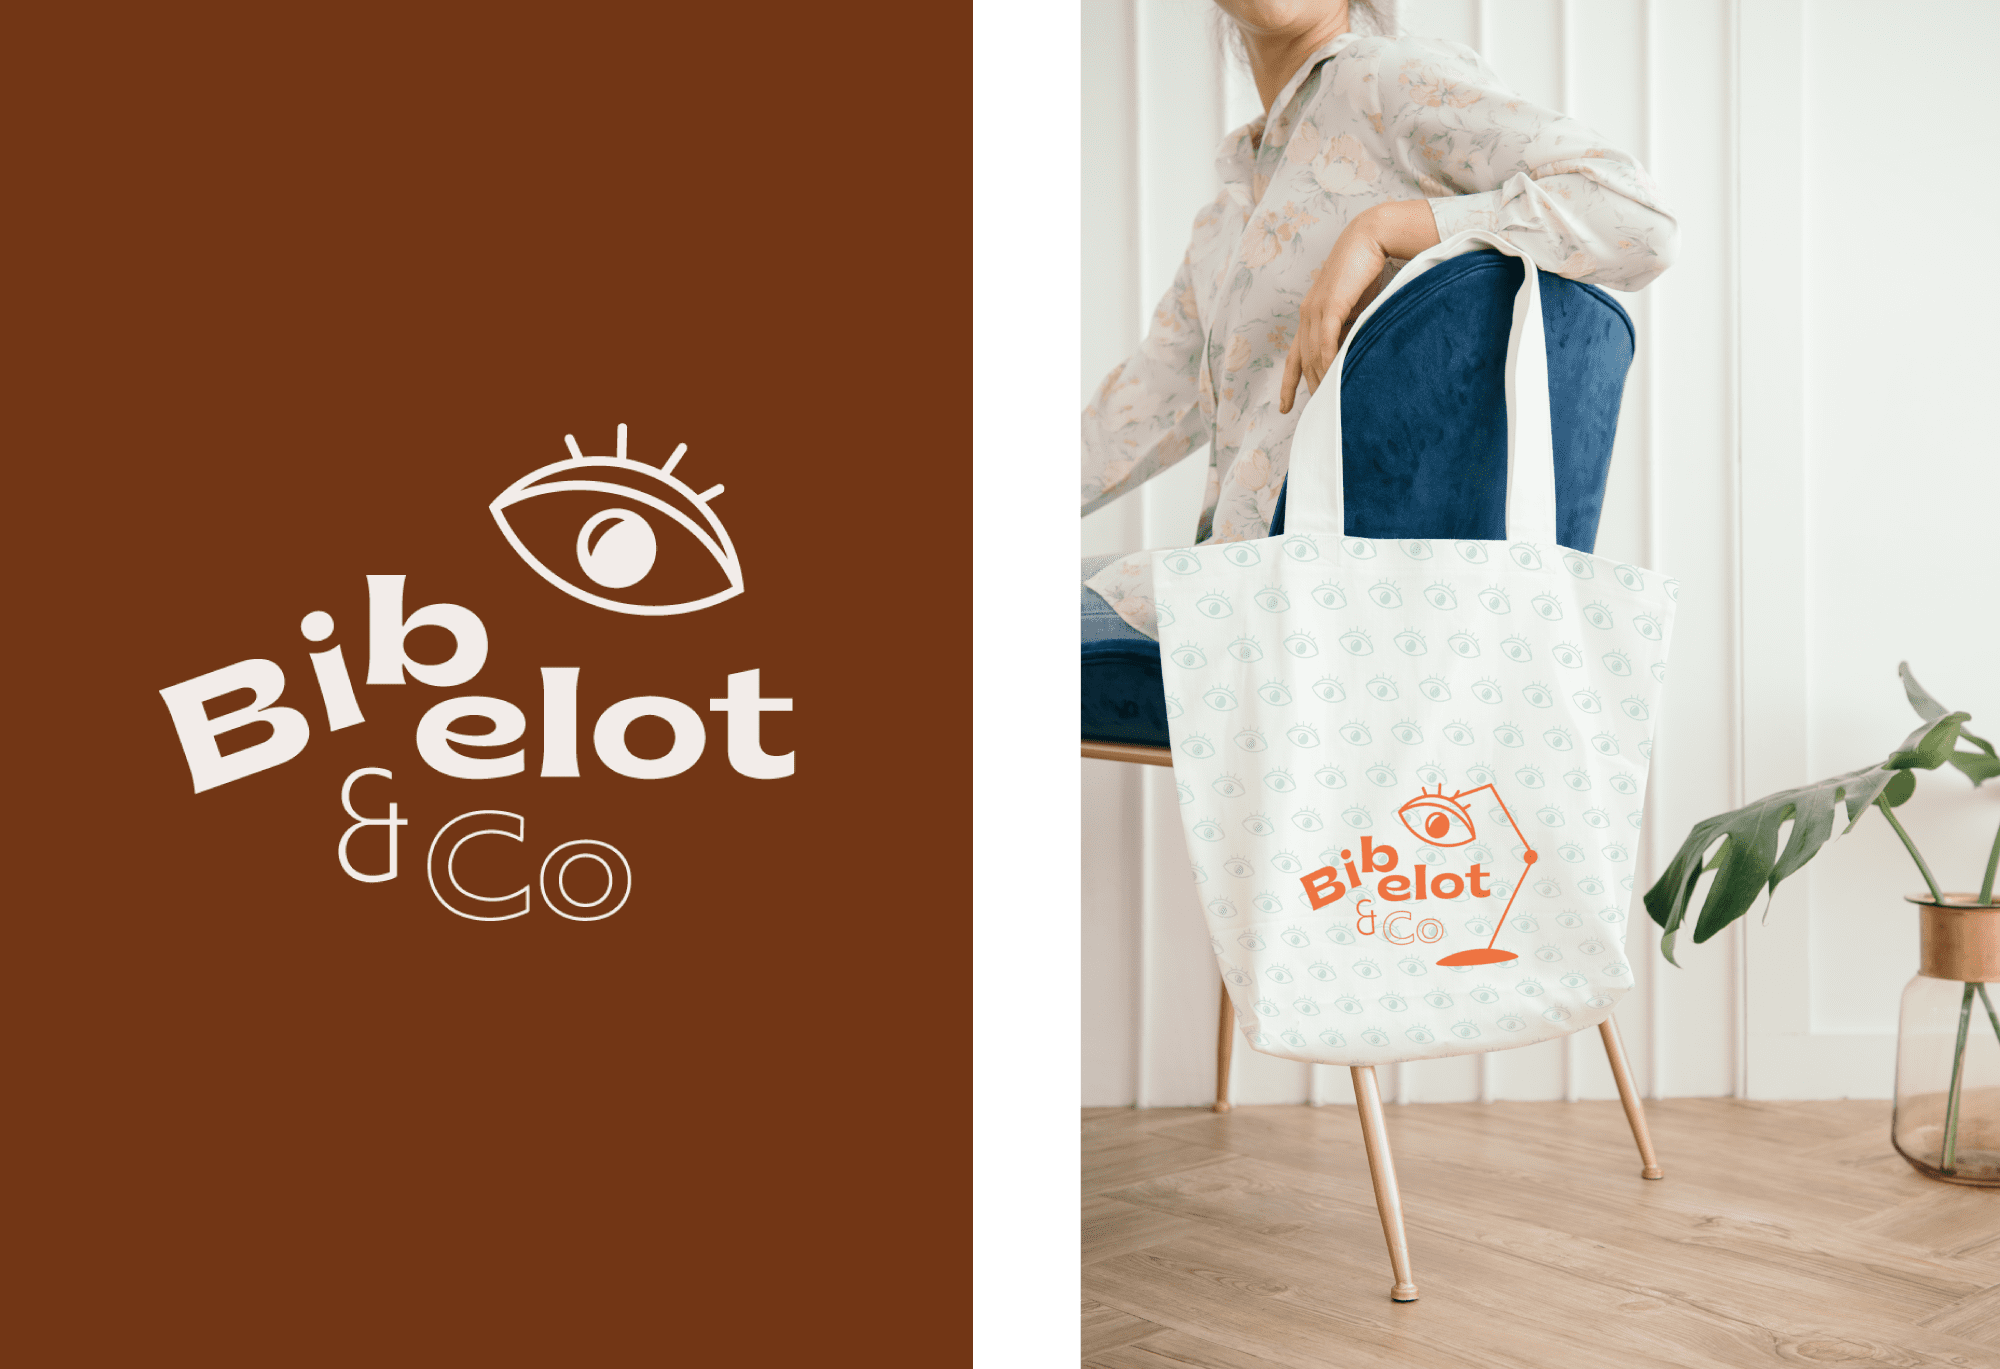 Logo de Bibelot & Co blanc sur fond coloré à coté d'une photographie du logo orange imprimé sur un tote bag blanc accroché à une chaise.